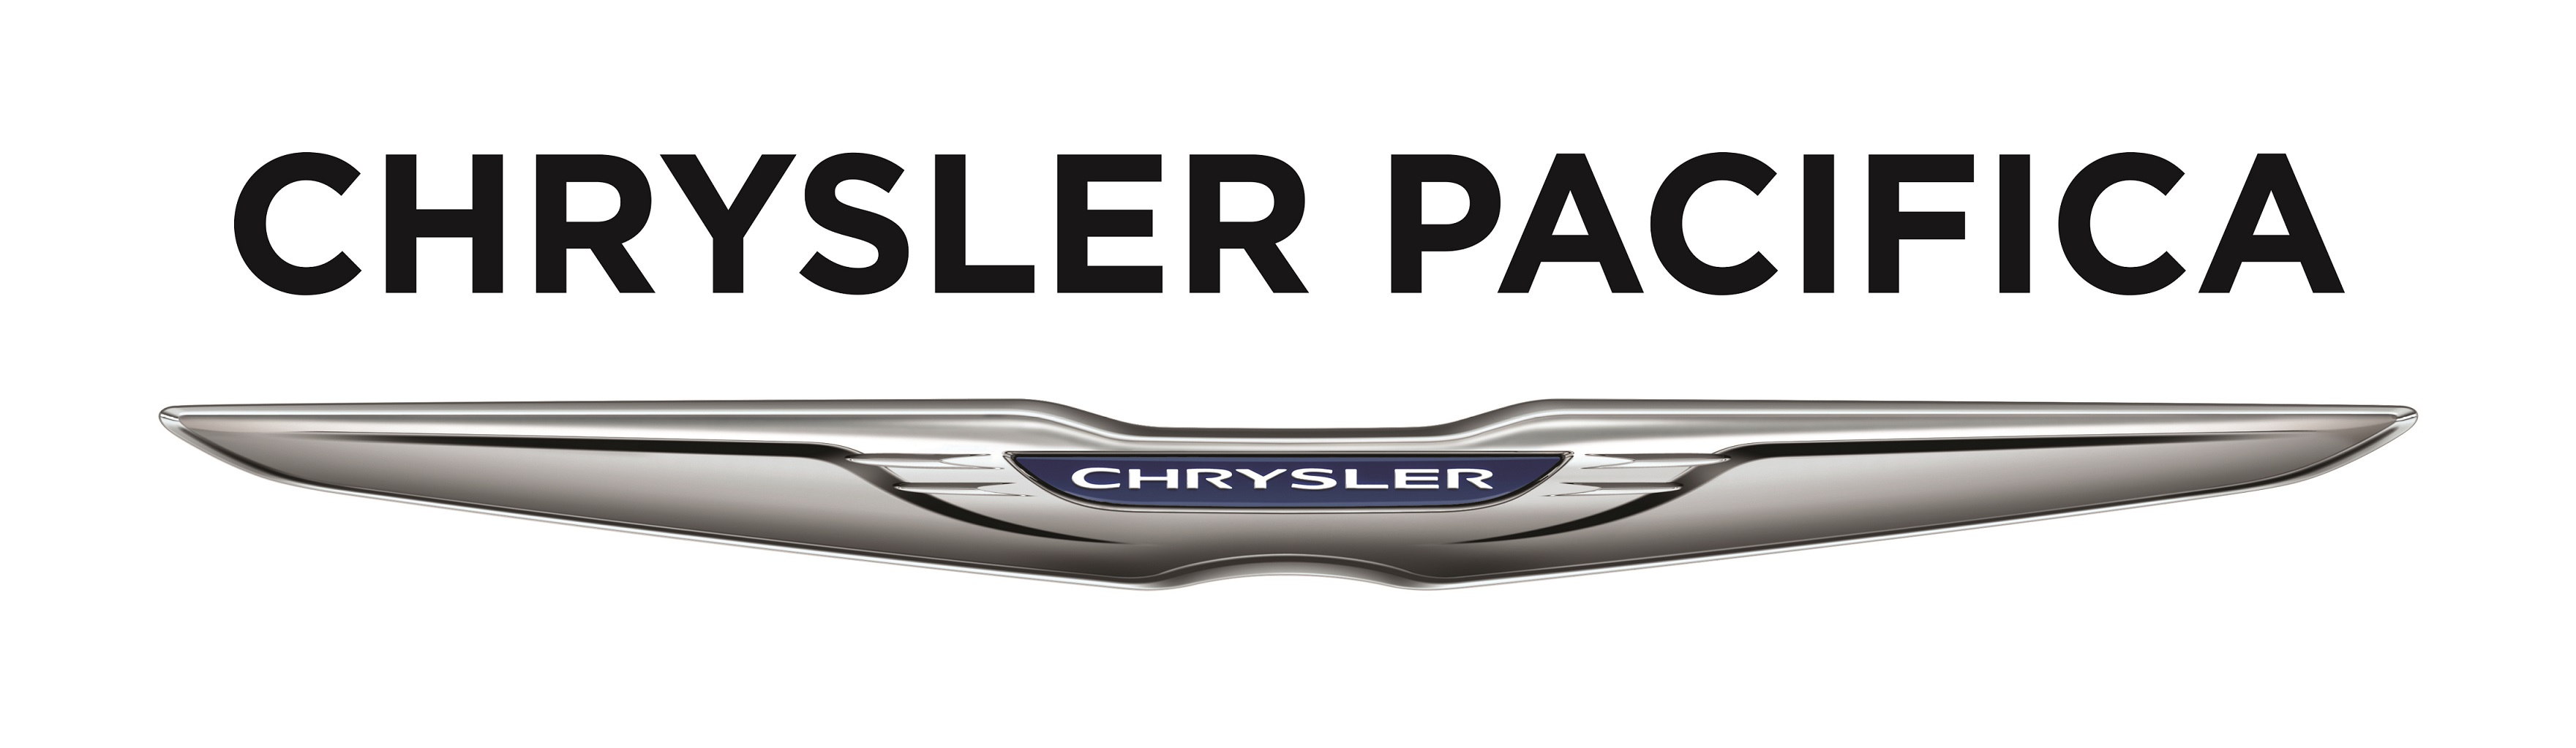 Chrysler 2020